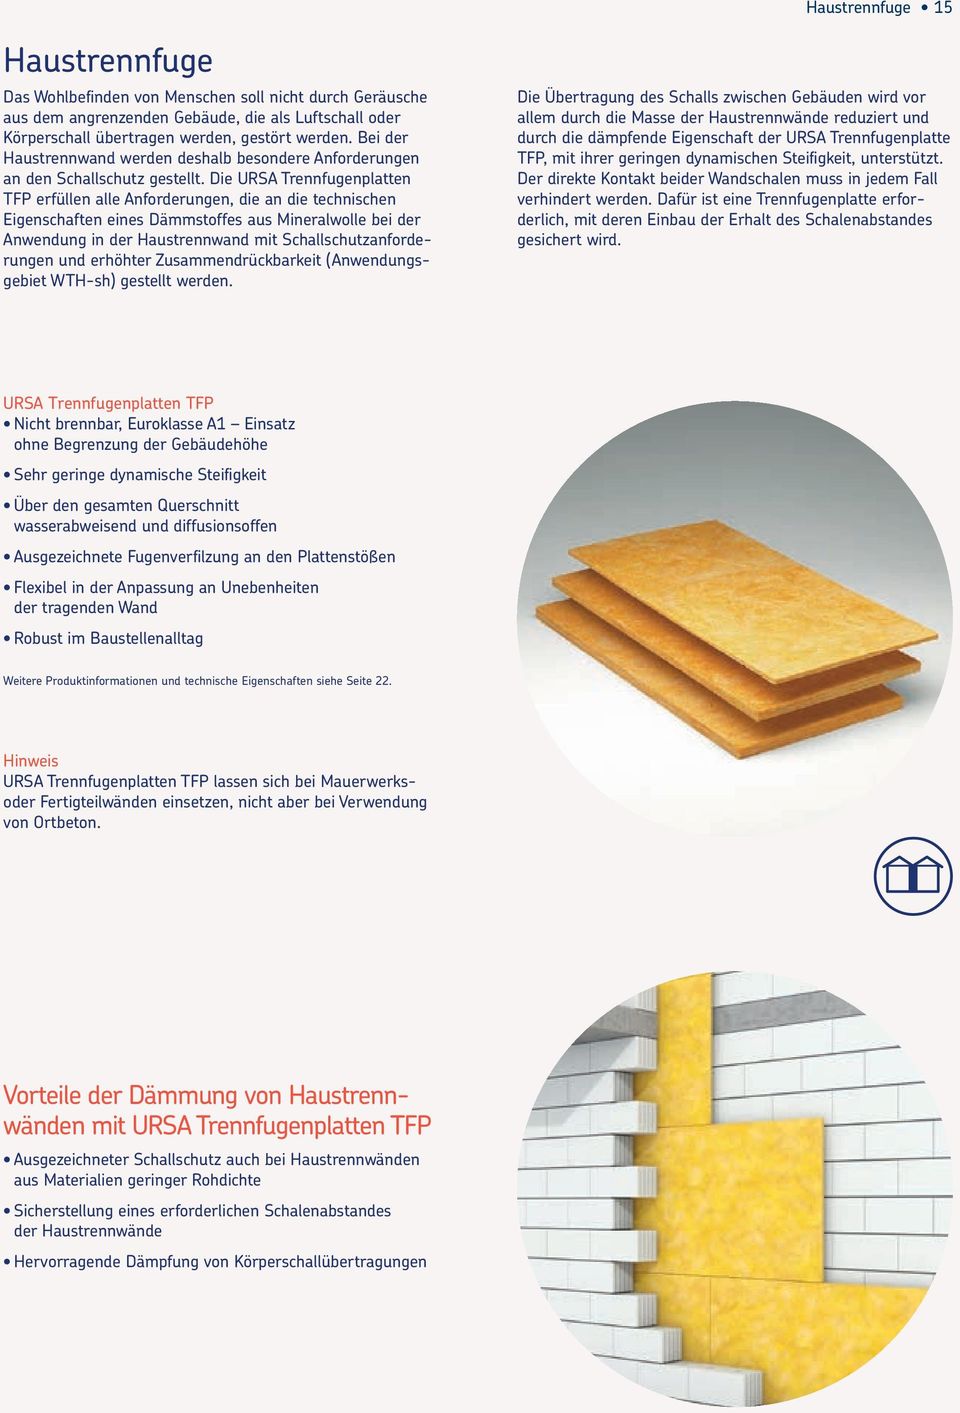 Die URSA Trennfugenplatten TFP erfüllen alle Anforderungen, die an die technischen Eigenschaften eines Dämmstoffes aus Mineralwolle bei der Anwendung in der Haustrennwand mit